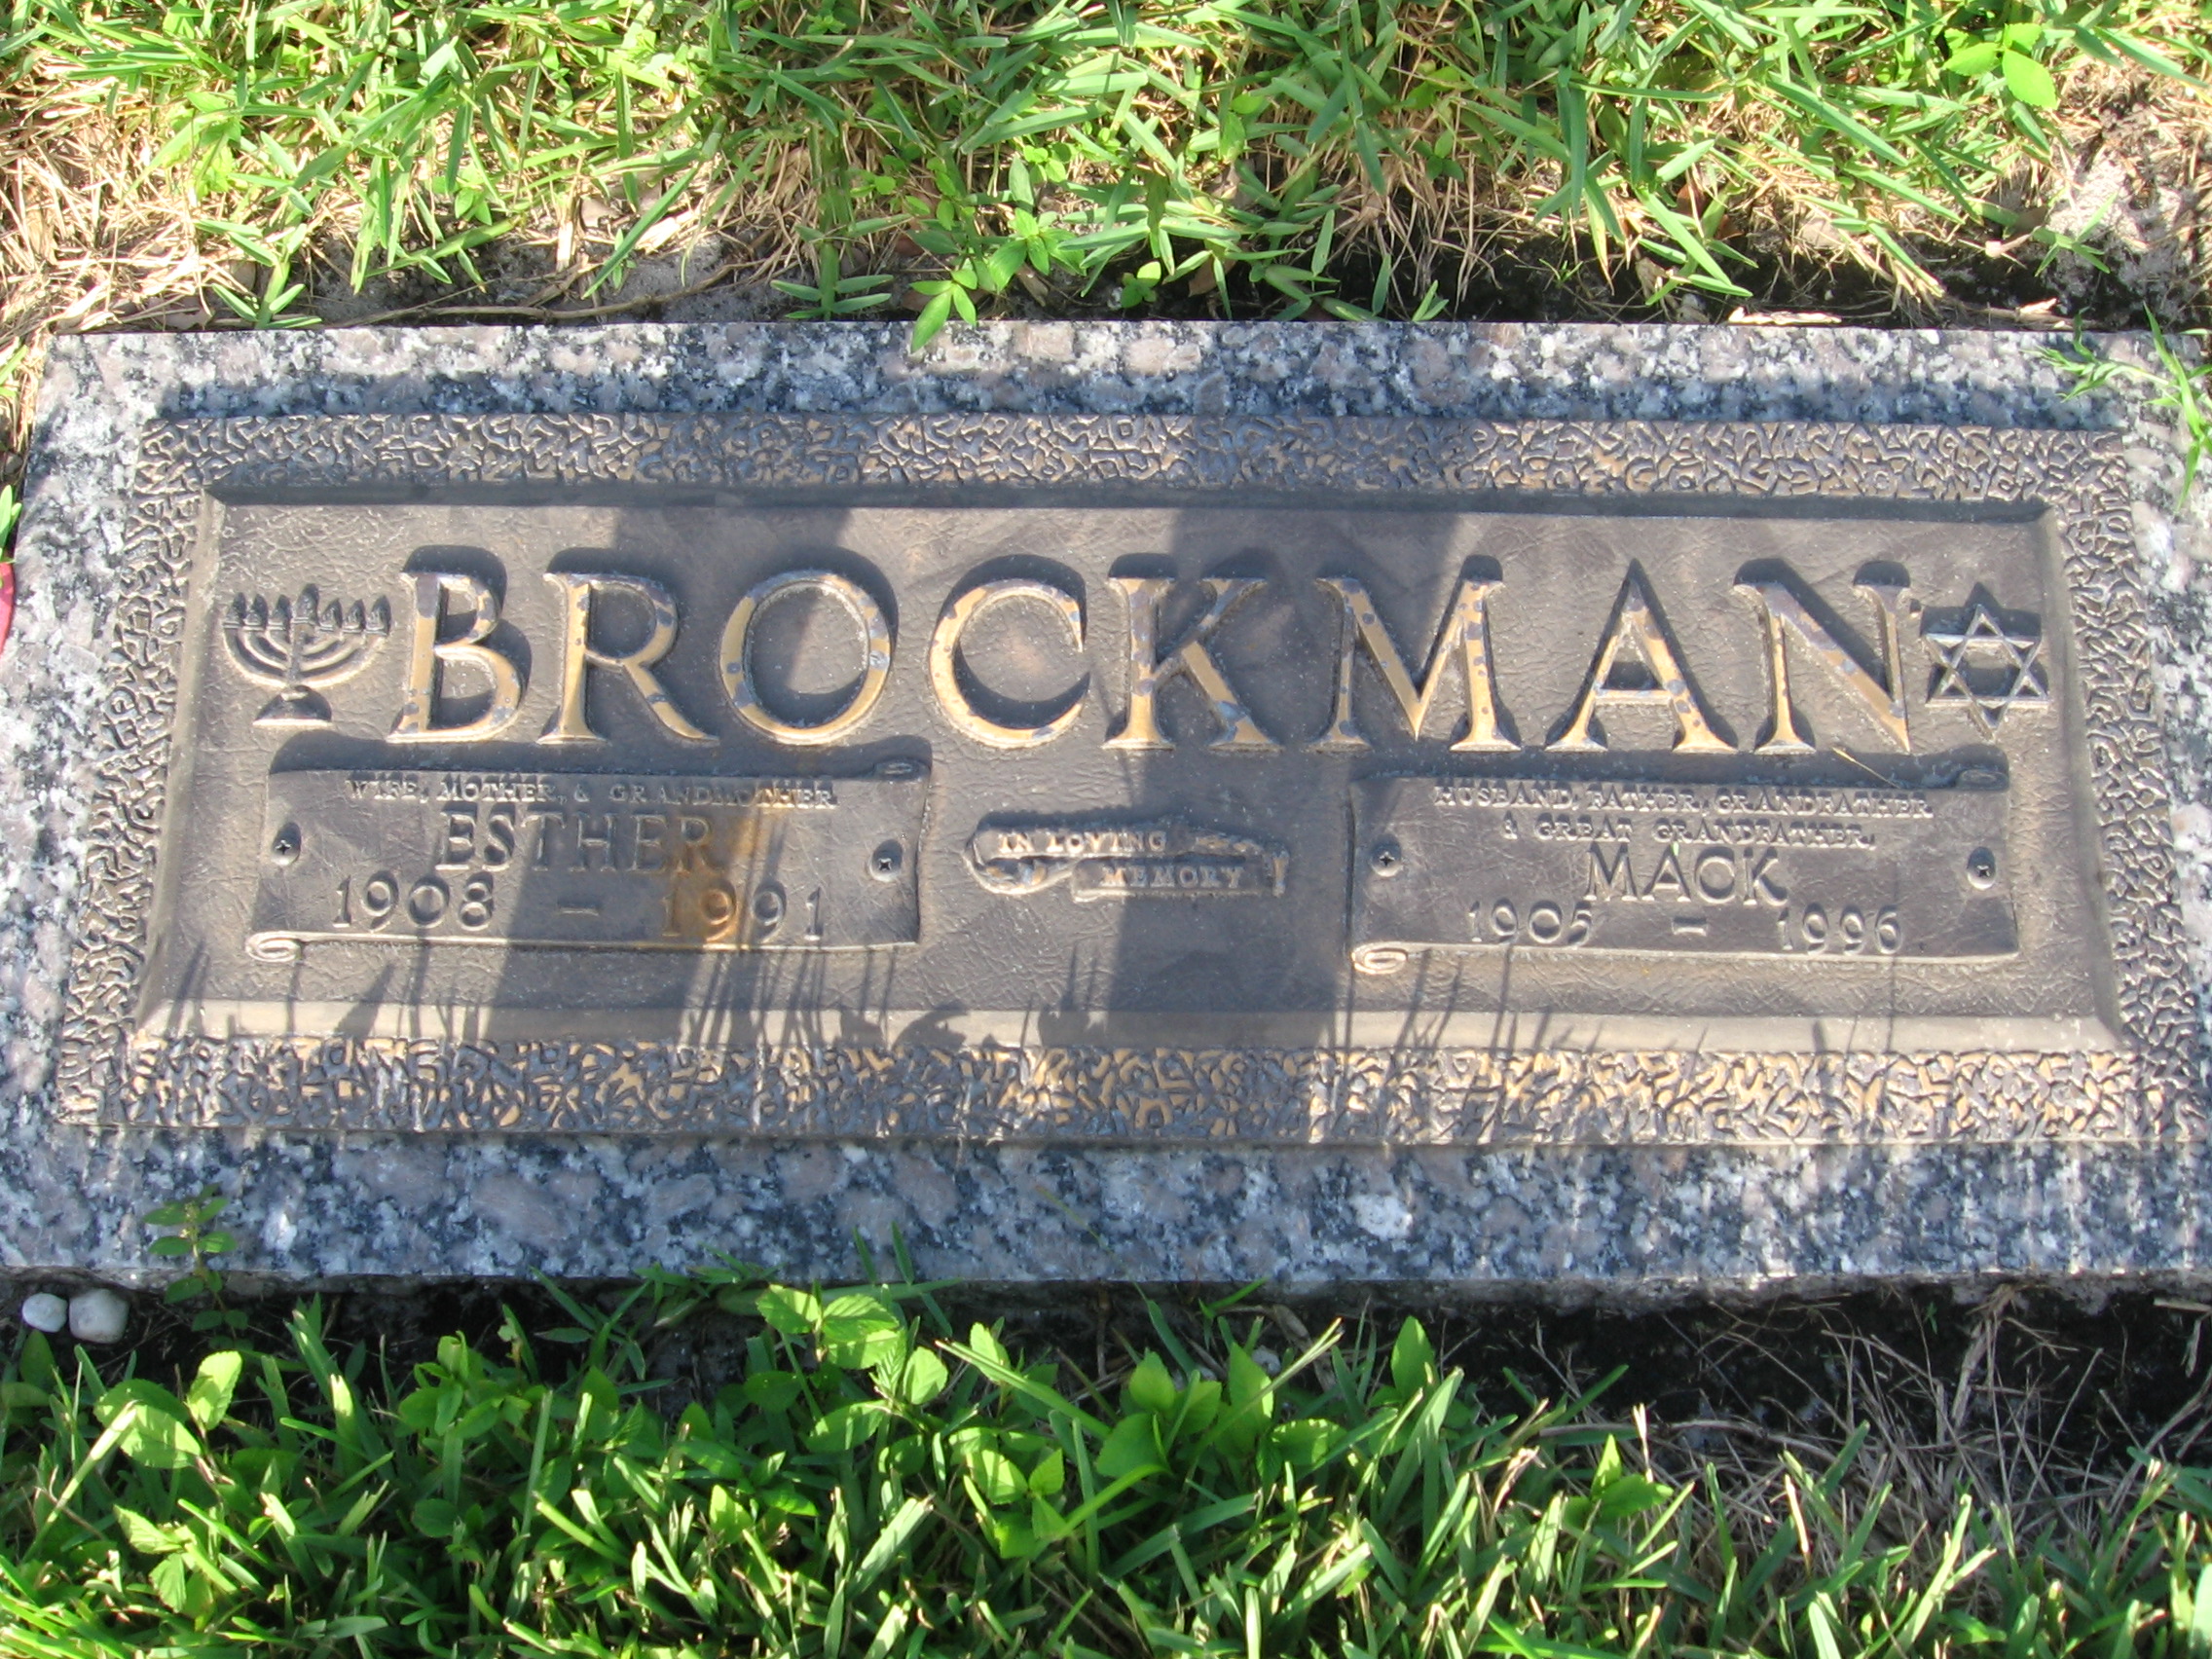 Mack Brockman